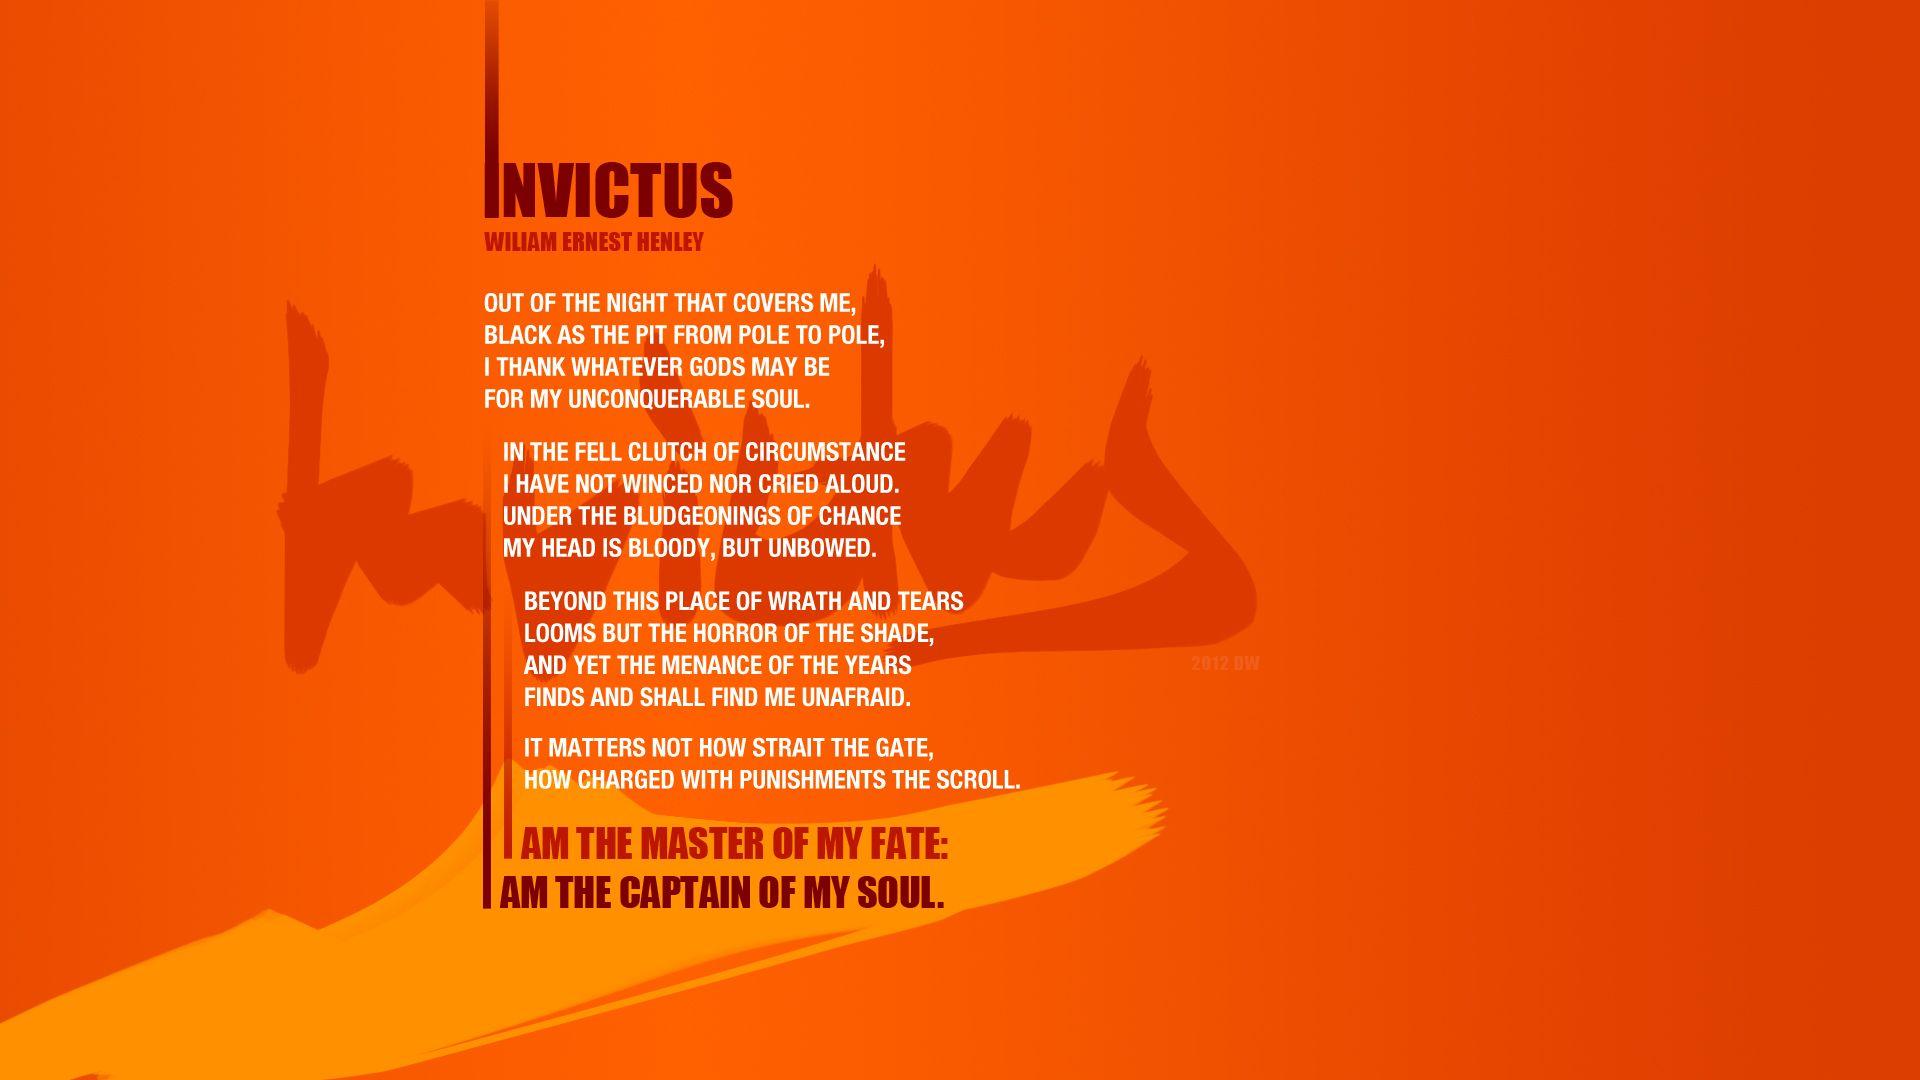 Invictus poem wallpaper